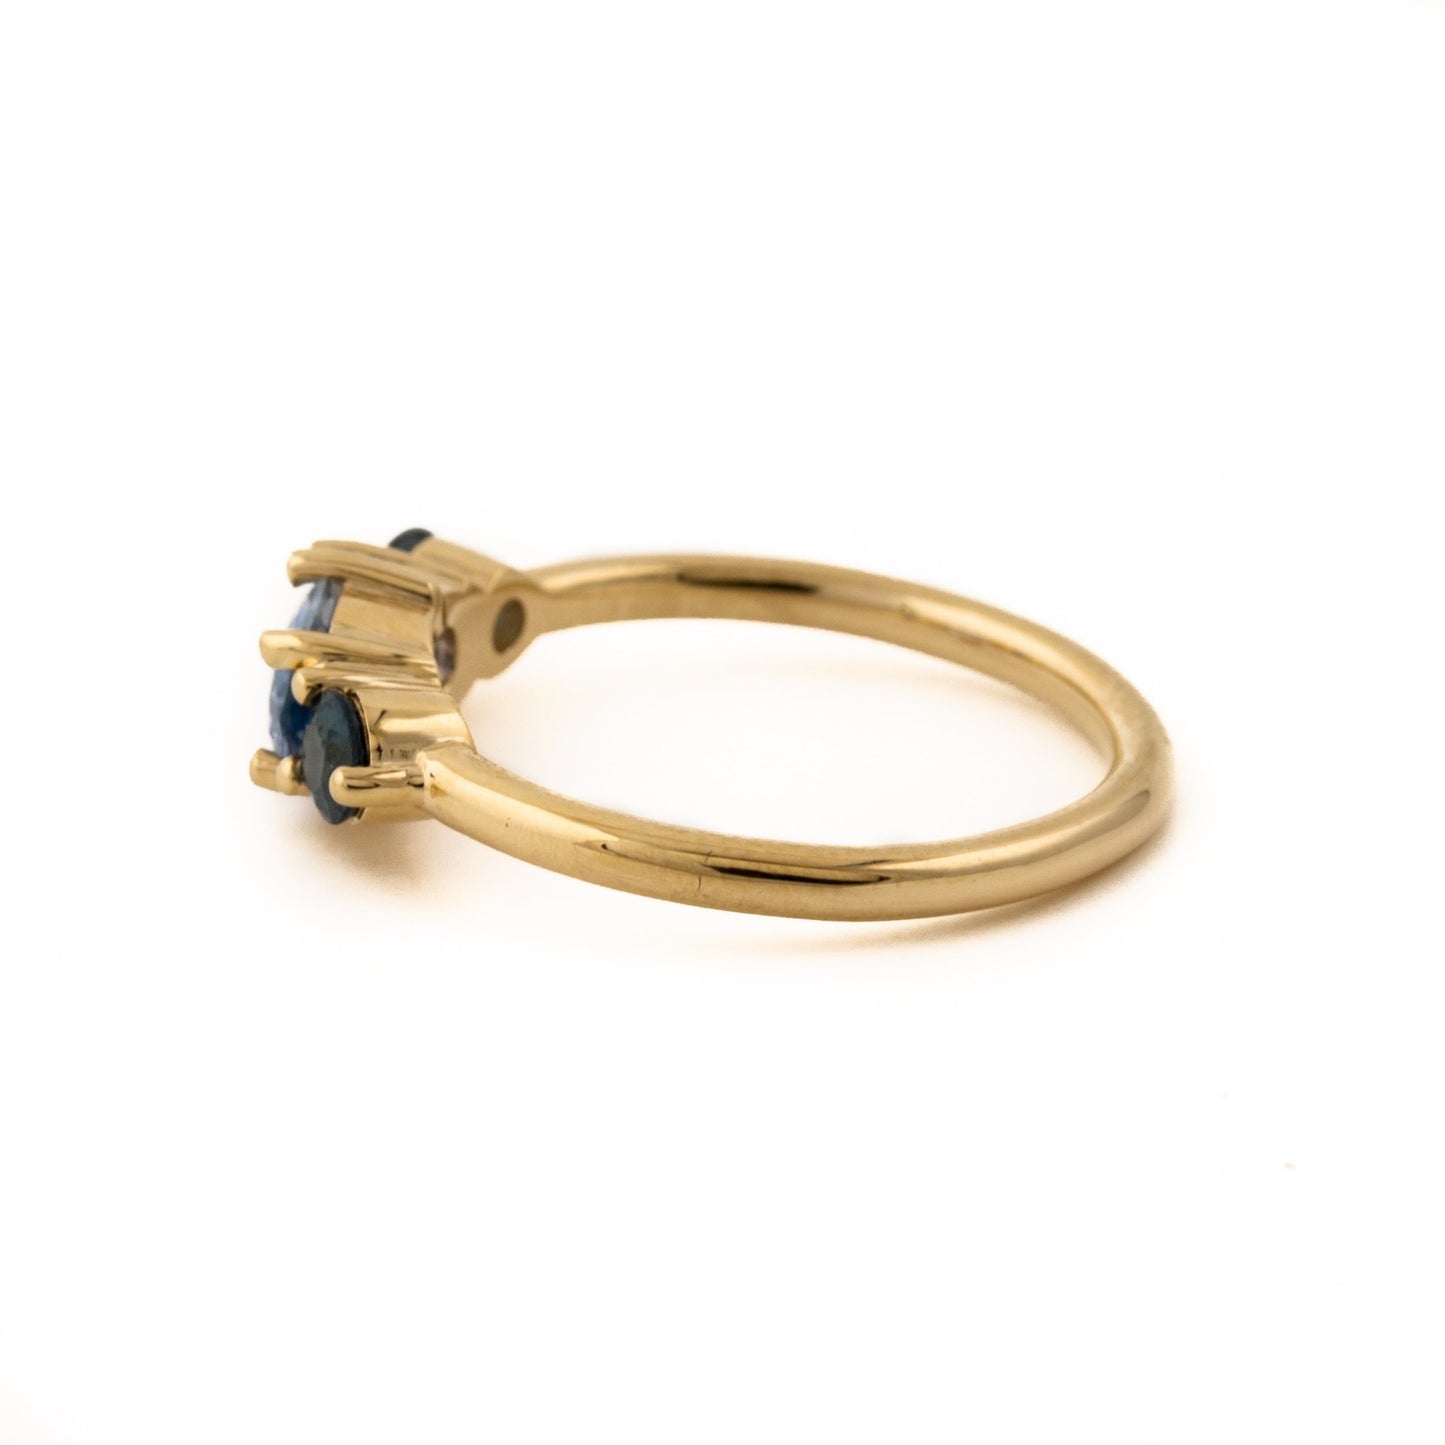 Oval Cut Sri Lankan Sapphire Ring - Kingdom Jewelry